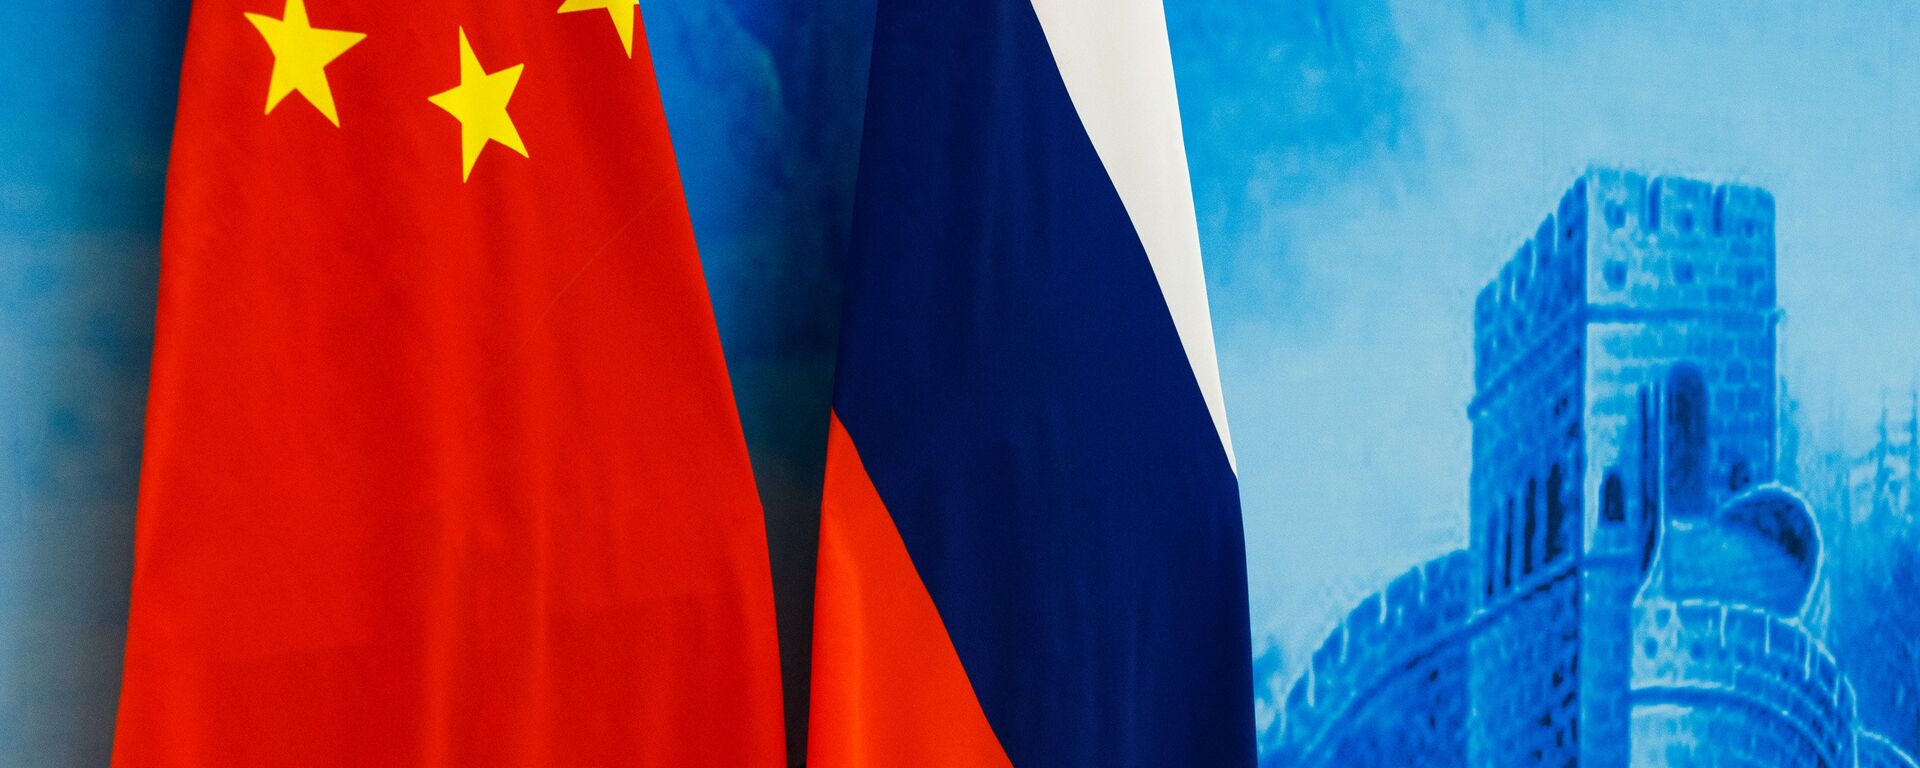 Las banderas de Rusia y China - Sputnik Mundo, 1920, 08.12.2019